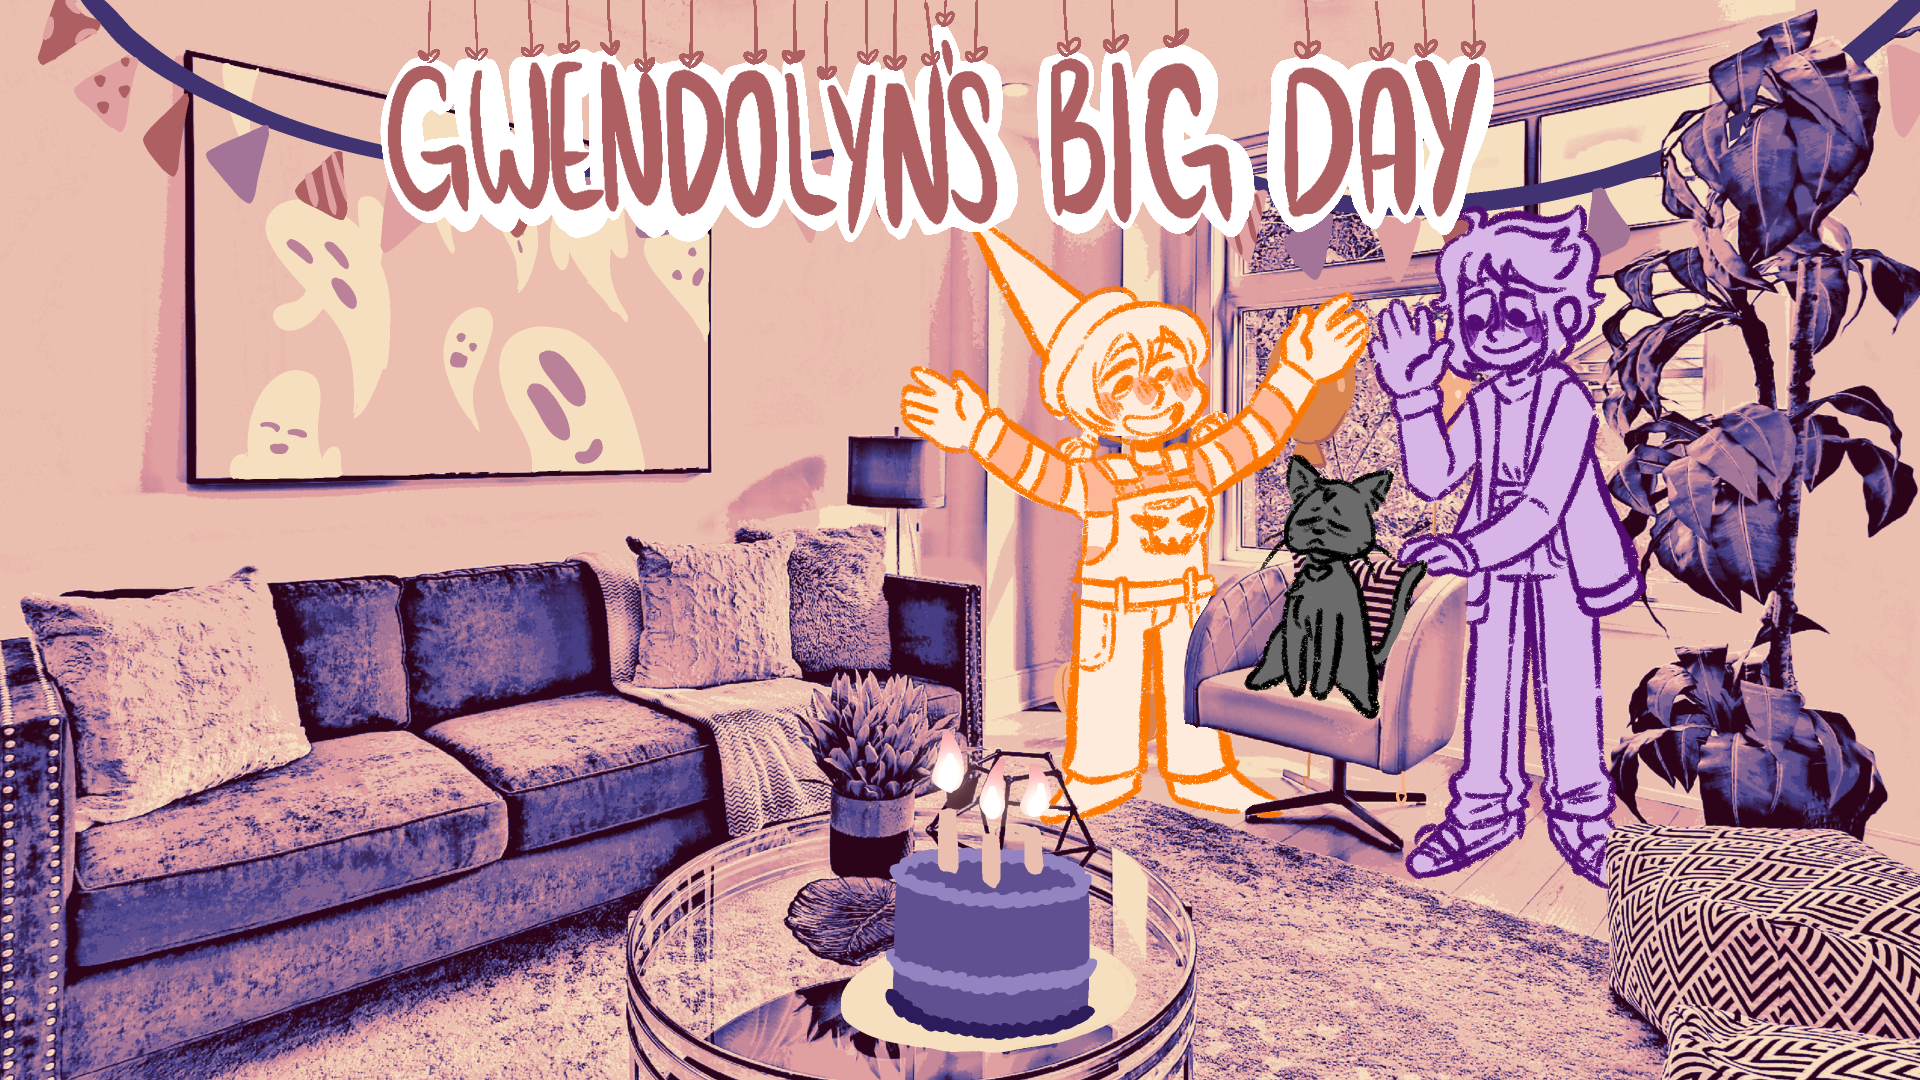 Gwendolyns Big Day